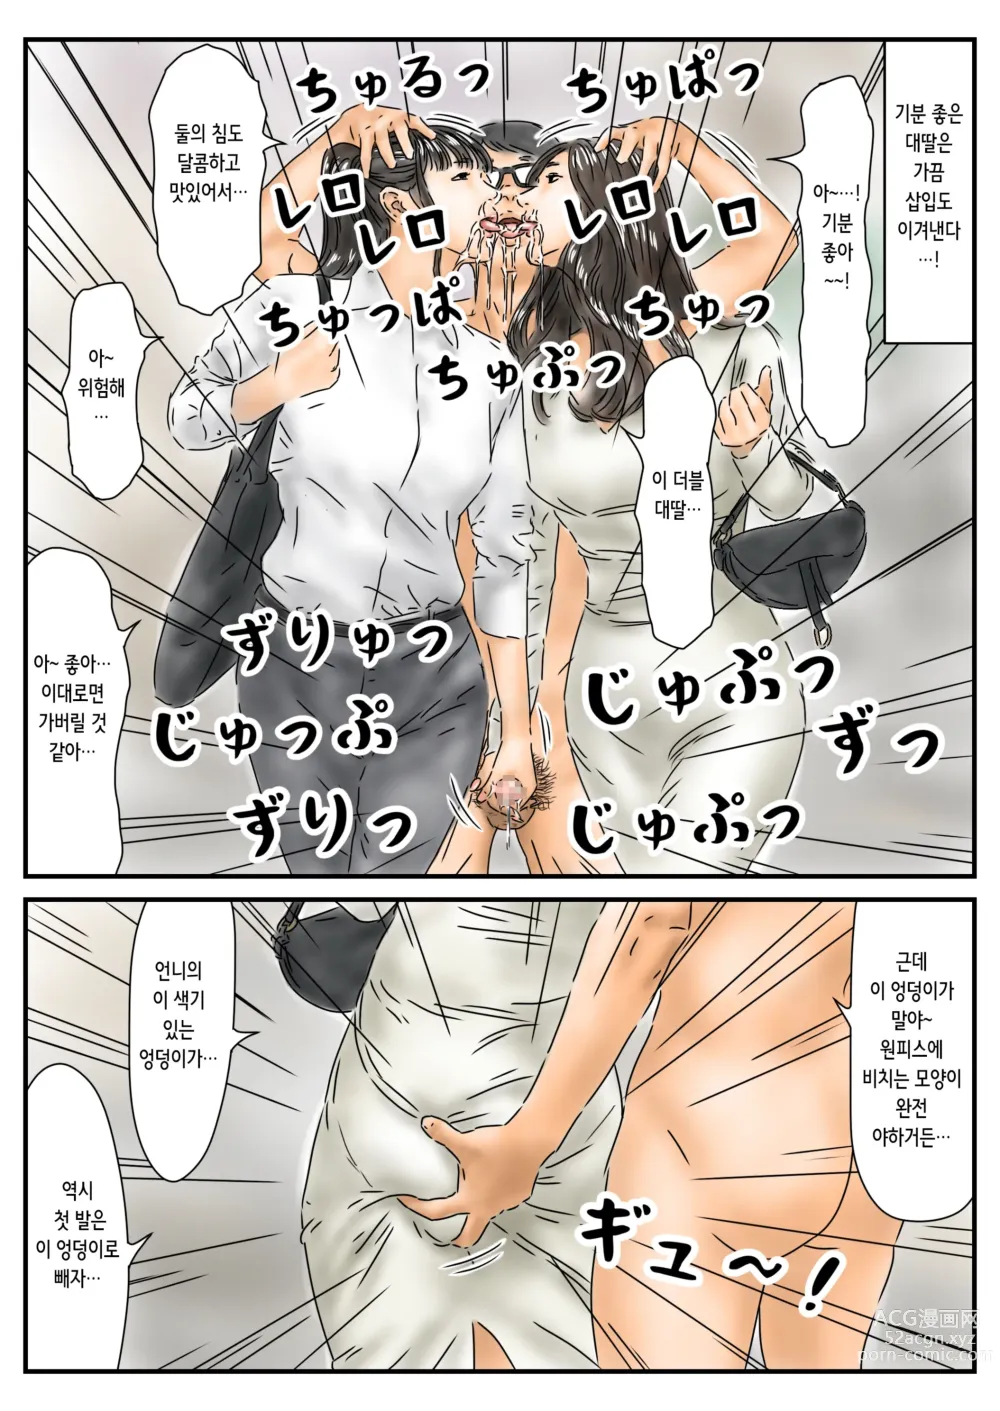 Page 13 of doujinshi 시간정지 예쁜 언니의 엉덩이에 욕정 해서 그 자리에서 해소했습니다